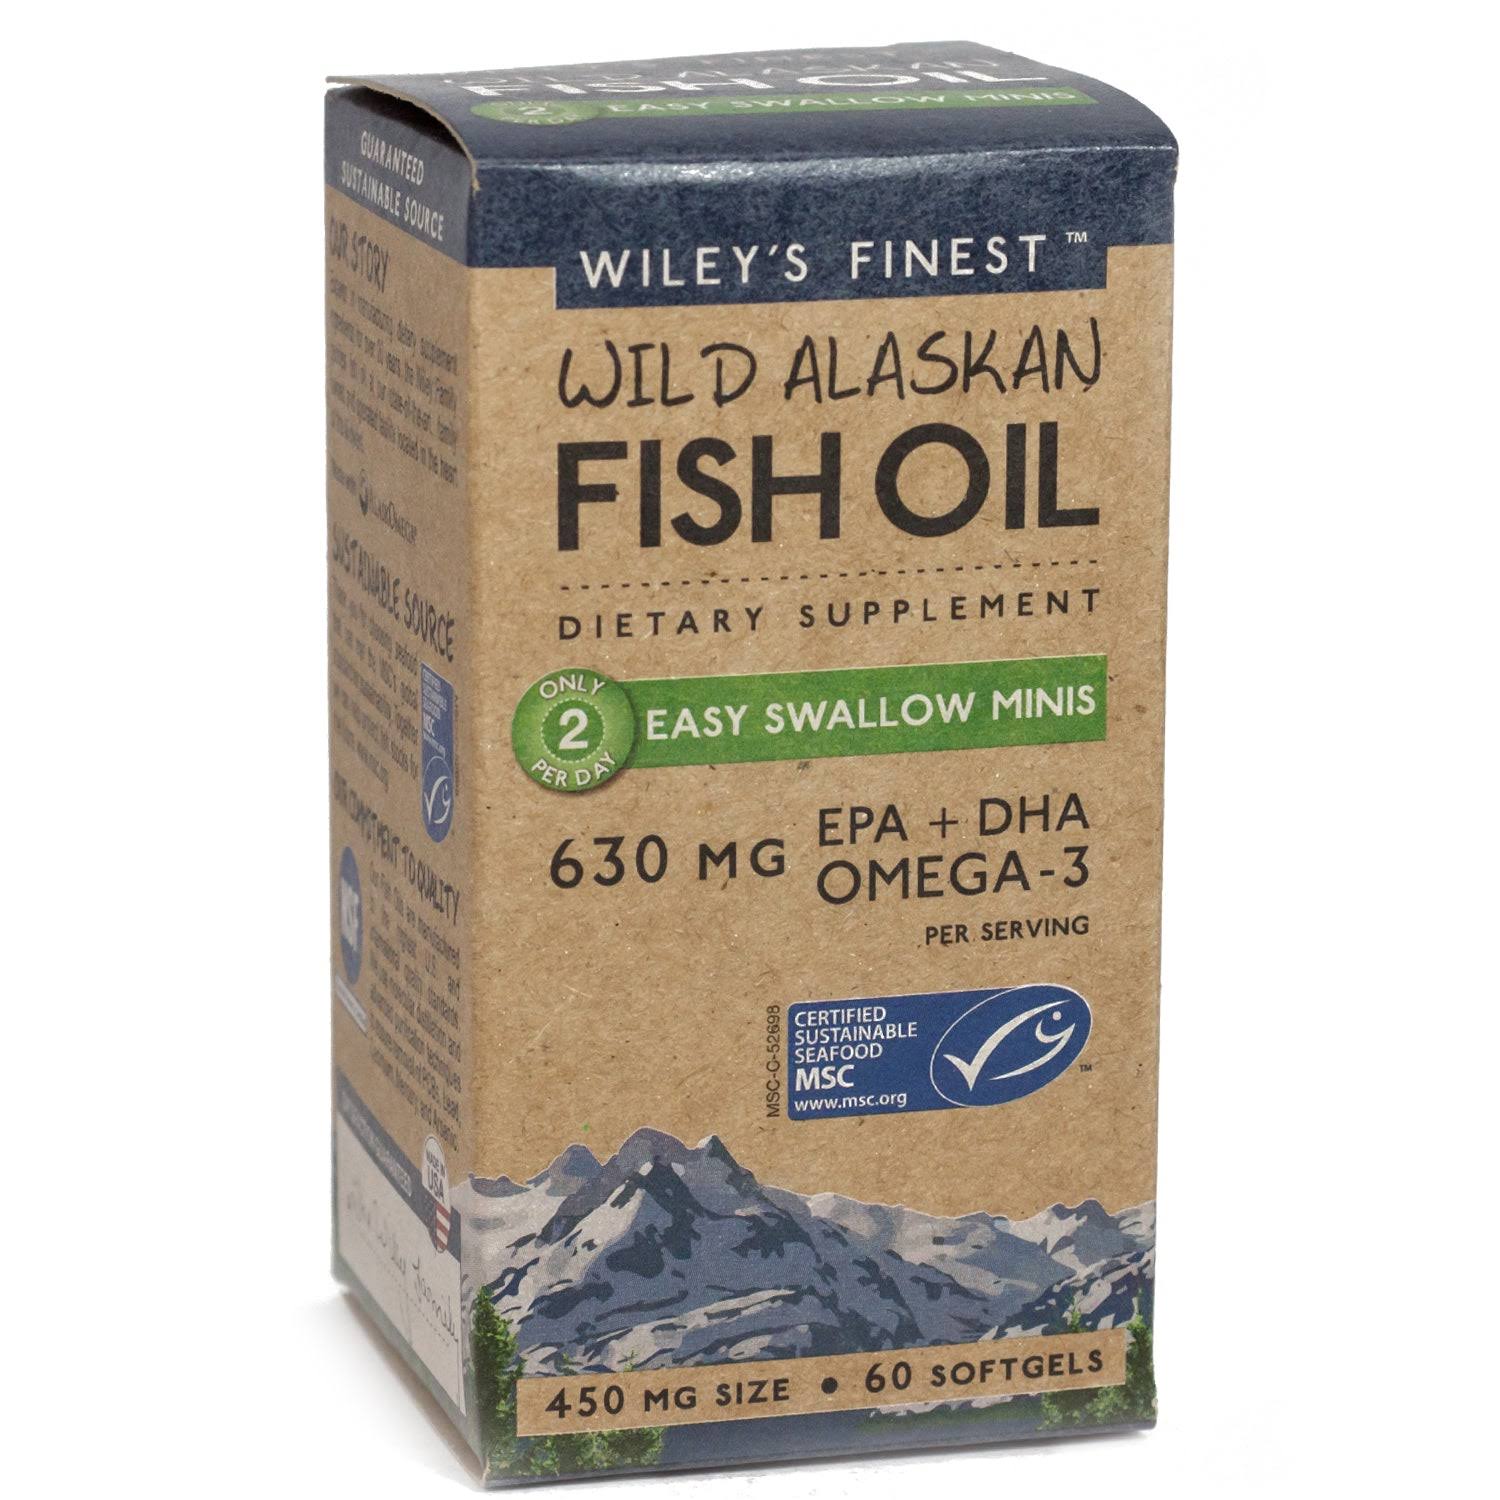 Wiley's Finest Wild Alaskan Fish Oil - 450mg, 60 Softgels